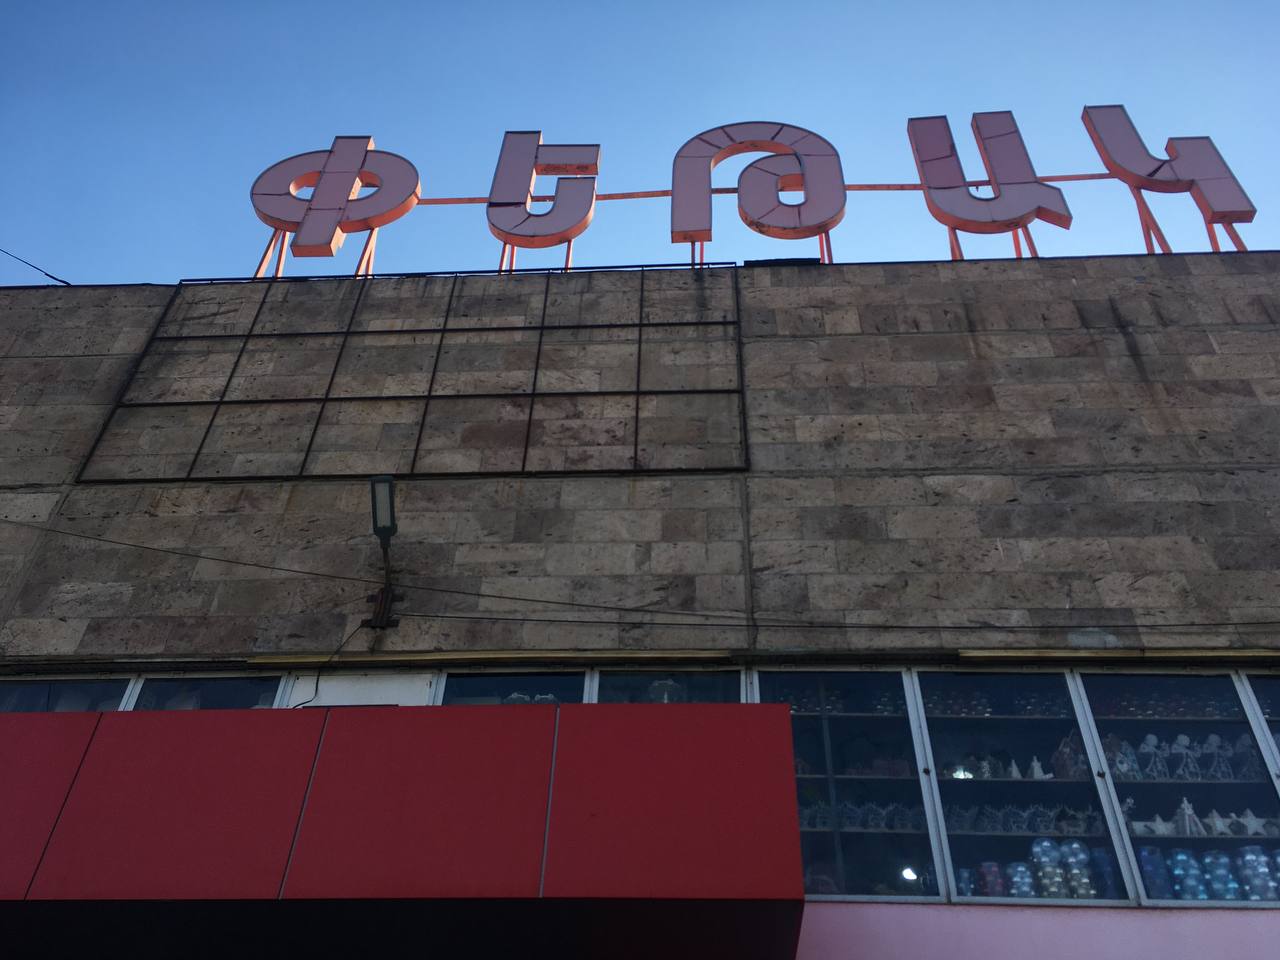 Если вы живёте в Ереване, то загляните на универсальный рынок «Петак». Там продаётся всё: электроника, бытовая техника, мебель, одежда, косметика, детские игрушки, еда